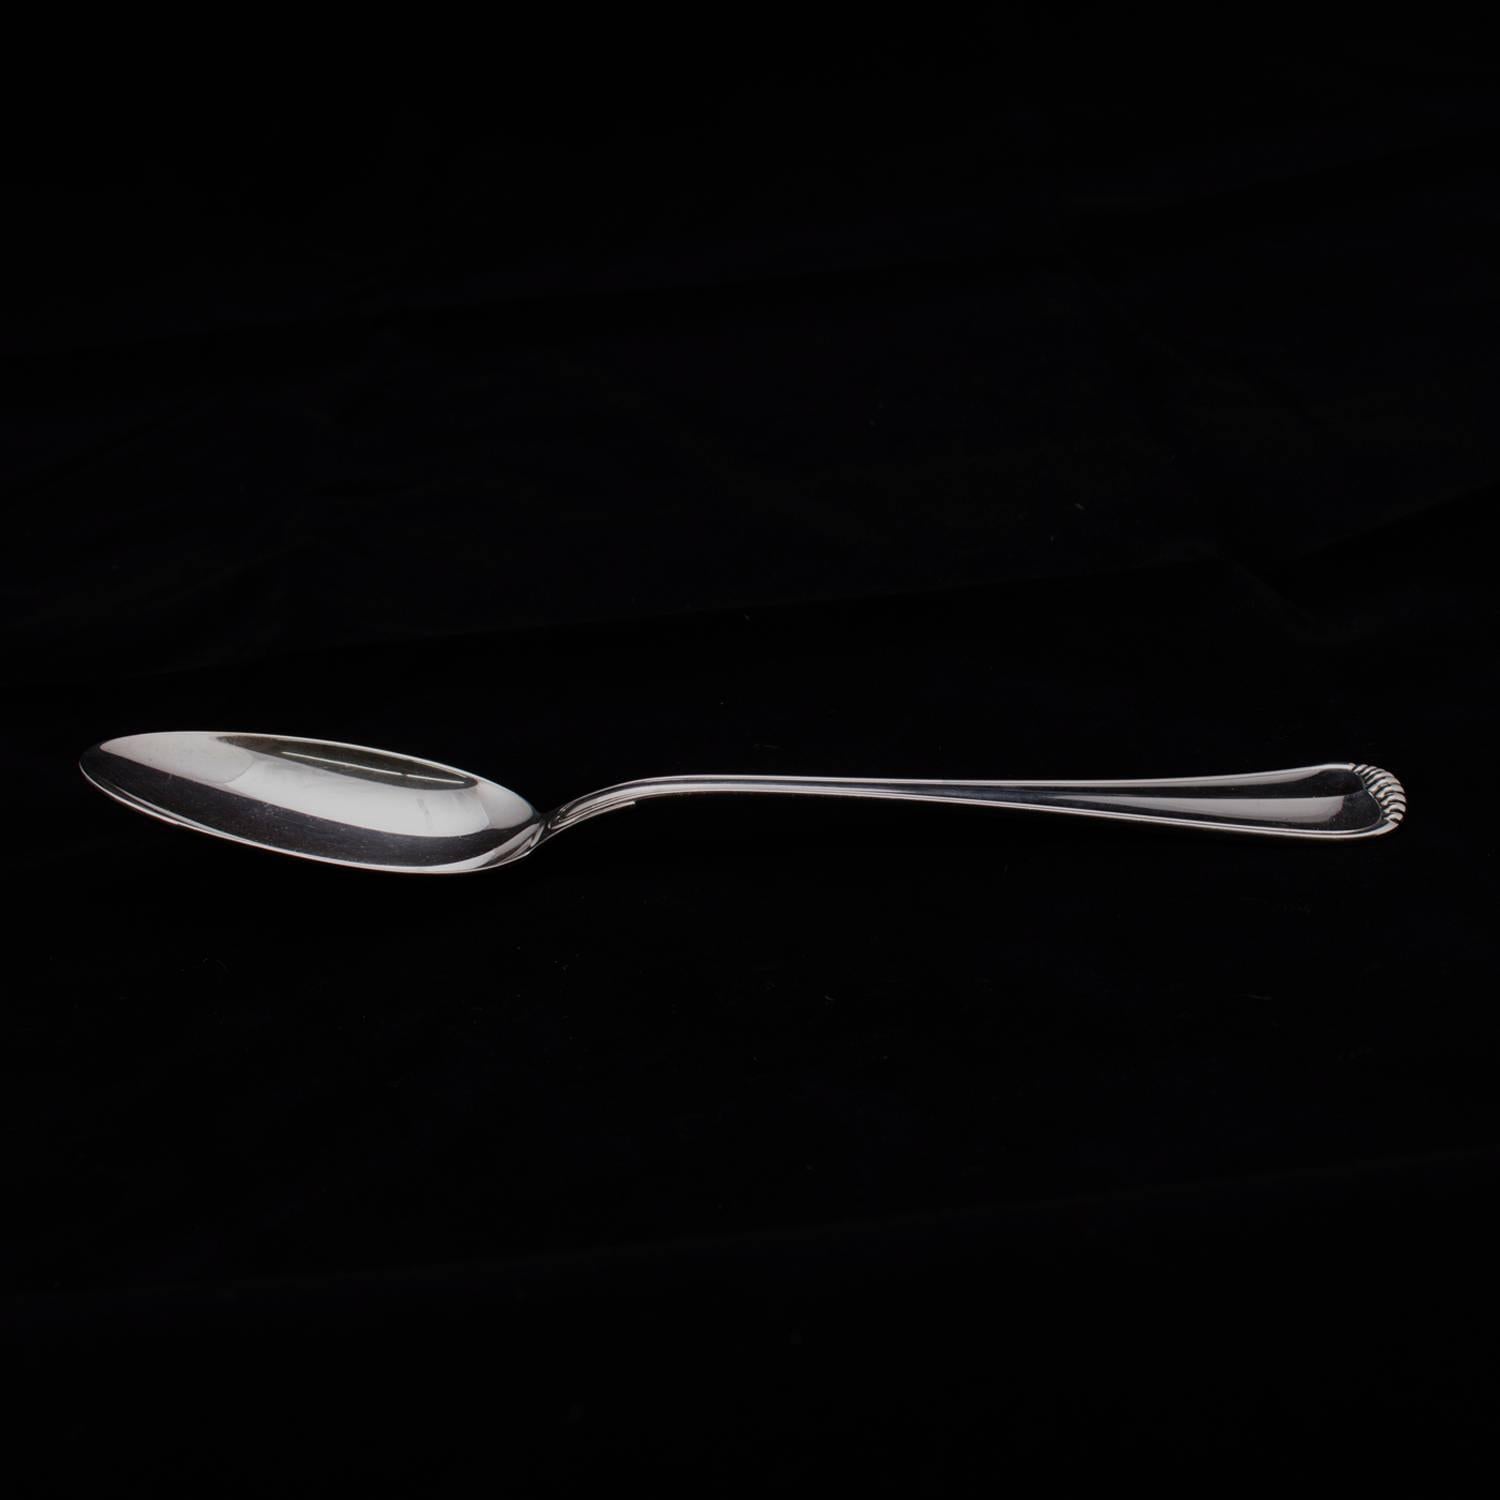 Italian Buccellati Milano Sterling Silver Serving Spoon, 4.18 toz, circa 1930 7